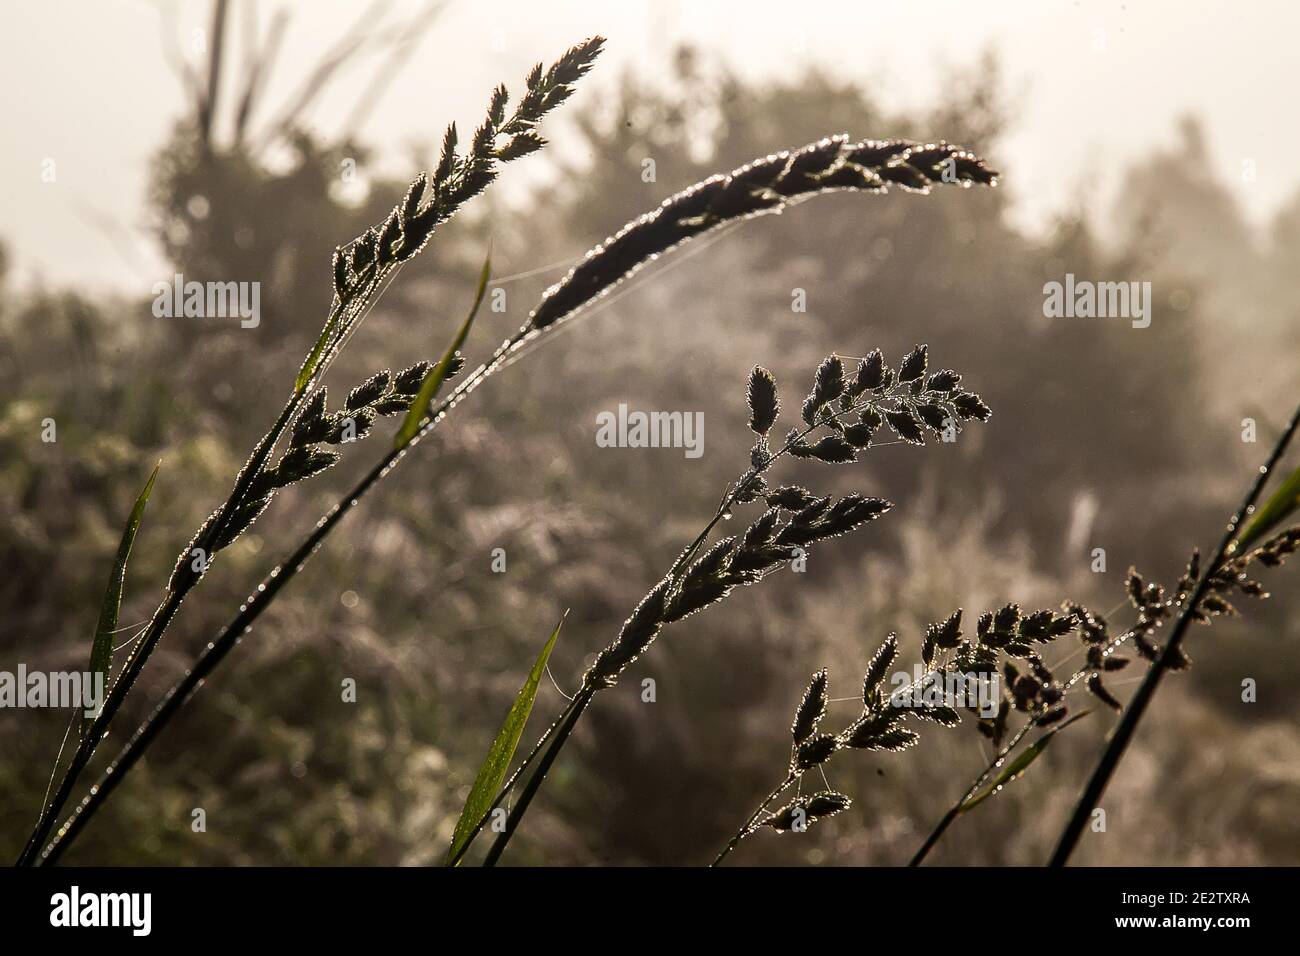 Unter dem Gewicht des Silbertaus sind Wiesengräser heruntergefallen. Ein nebliger Sommermorgen. Spinnweben und Blätter im Silbertau Stockfoto